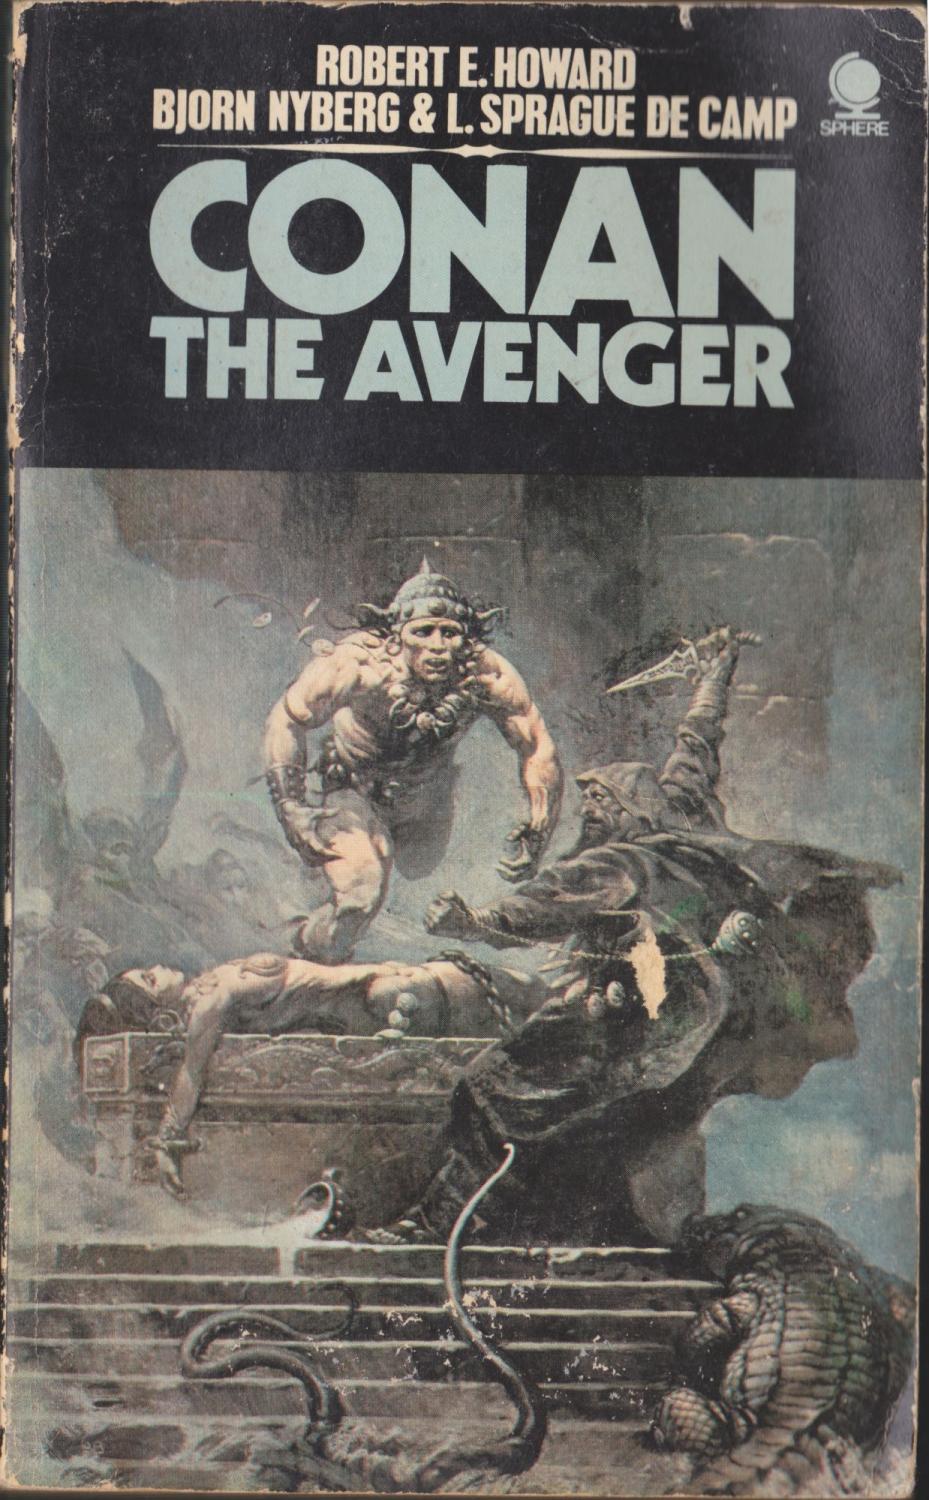 Conan The Avenger - Howard, Robert E.; De Camp, L. Sprague; Nyberg, Bjorn